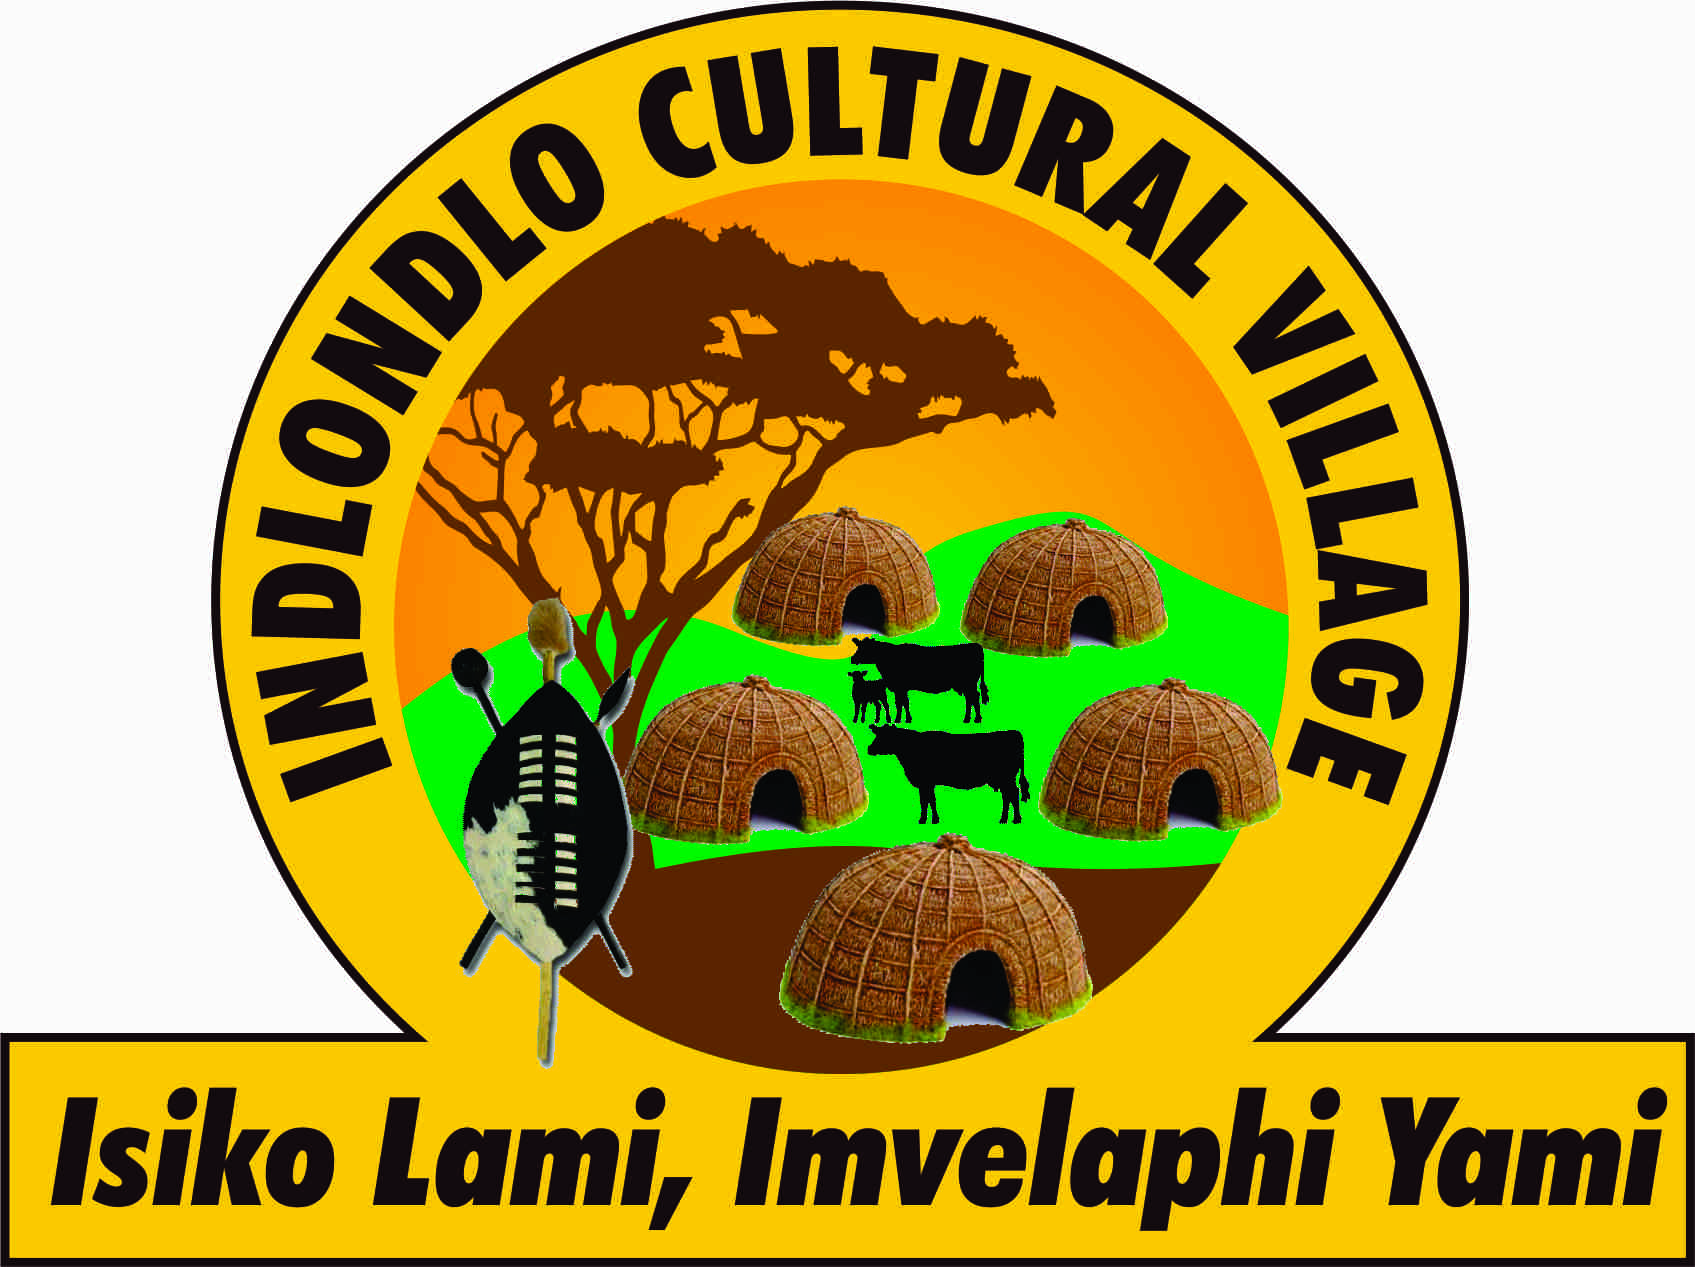 Indlondlo Cultural Village